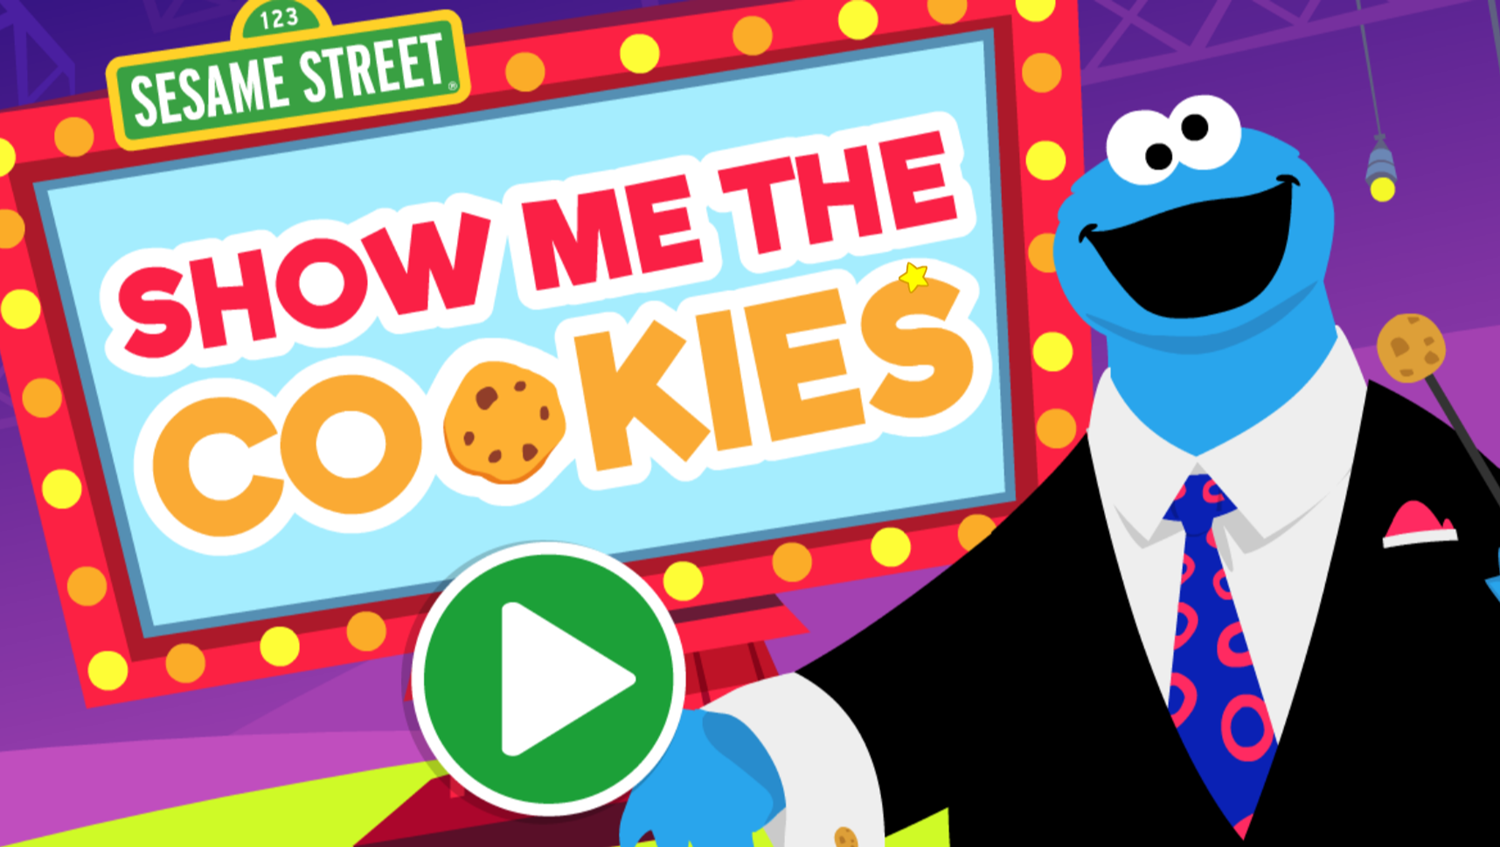 Sesame Street Show Me The Cookies Game Welcome Screen Screenshot.